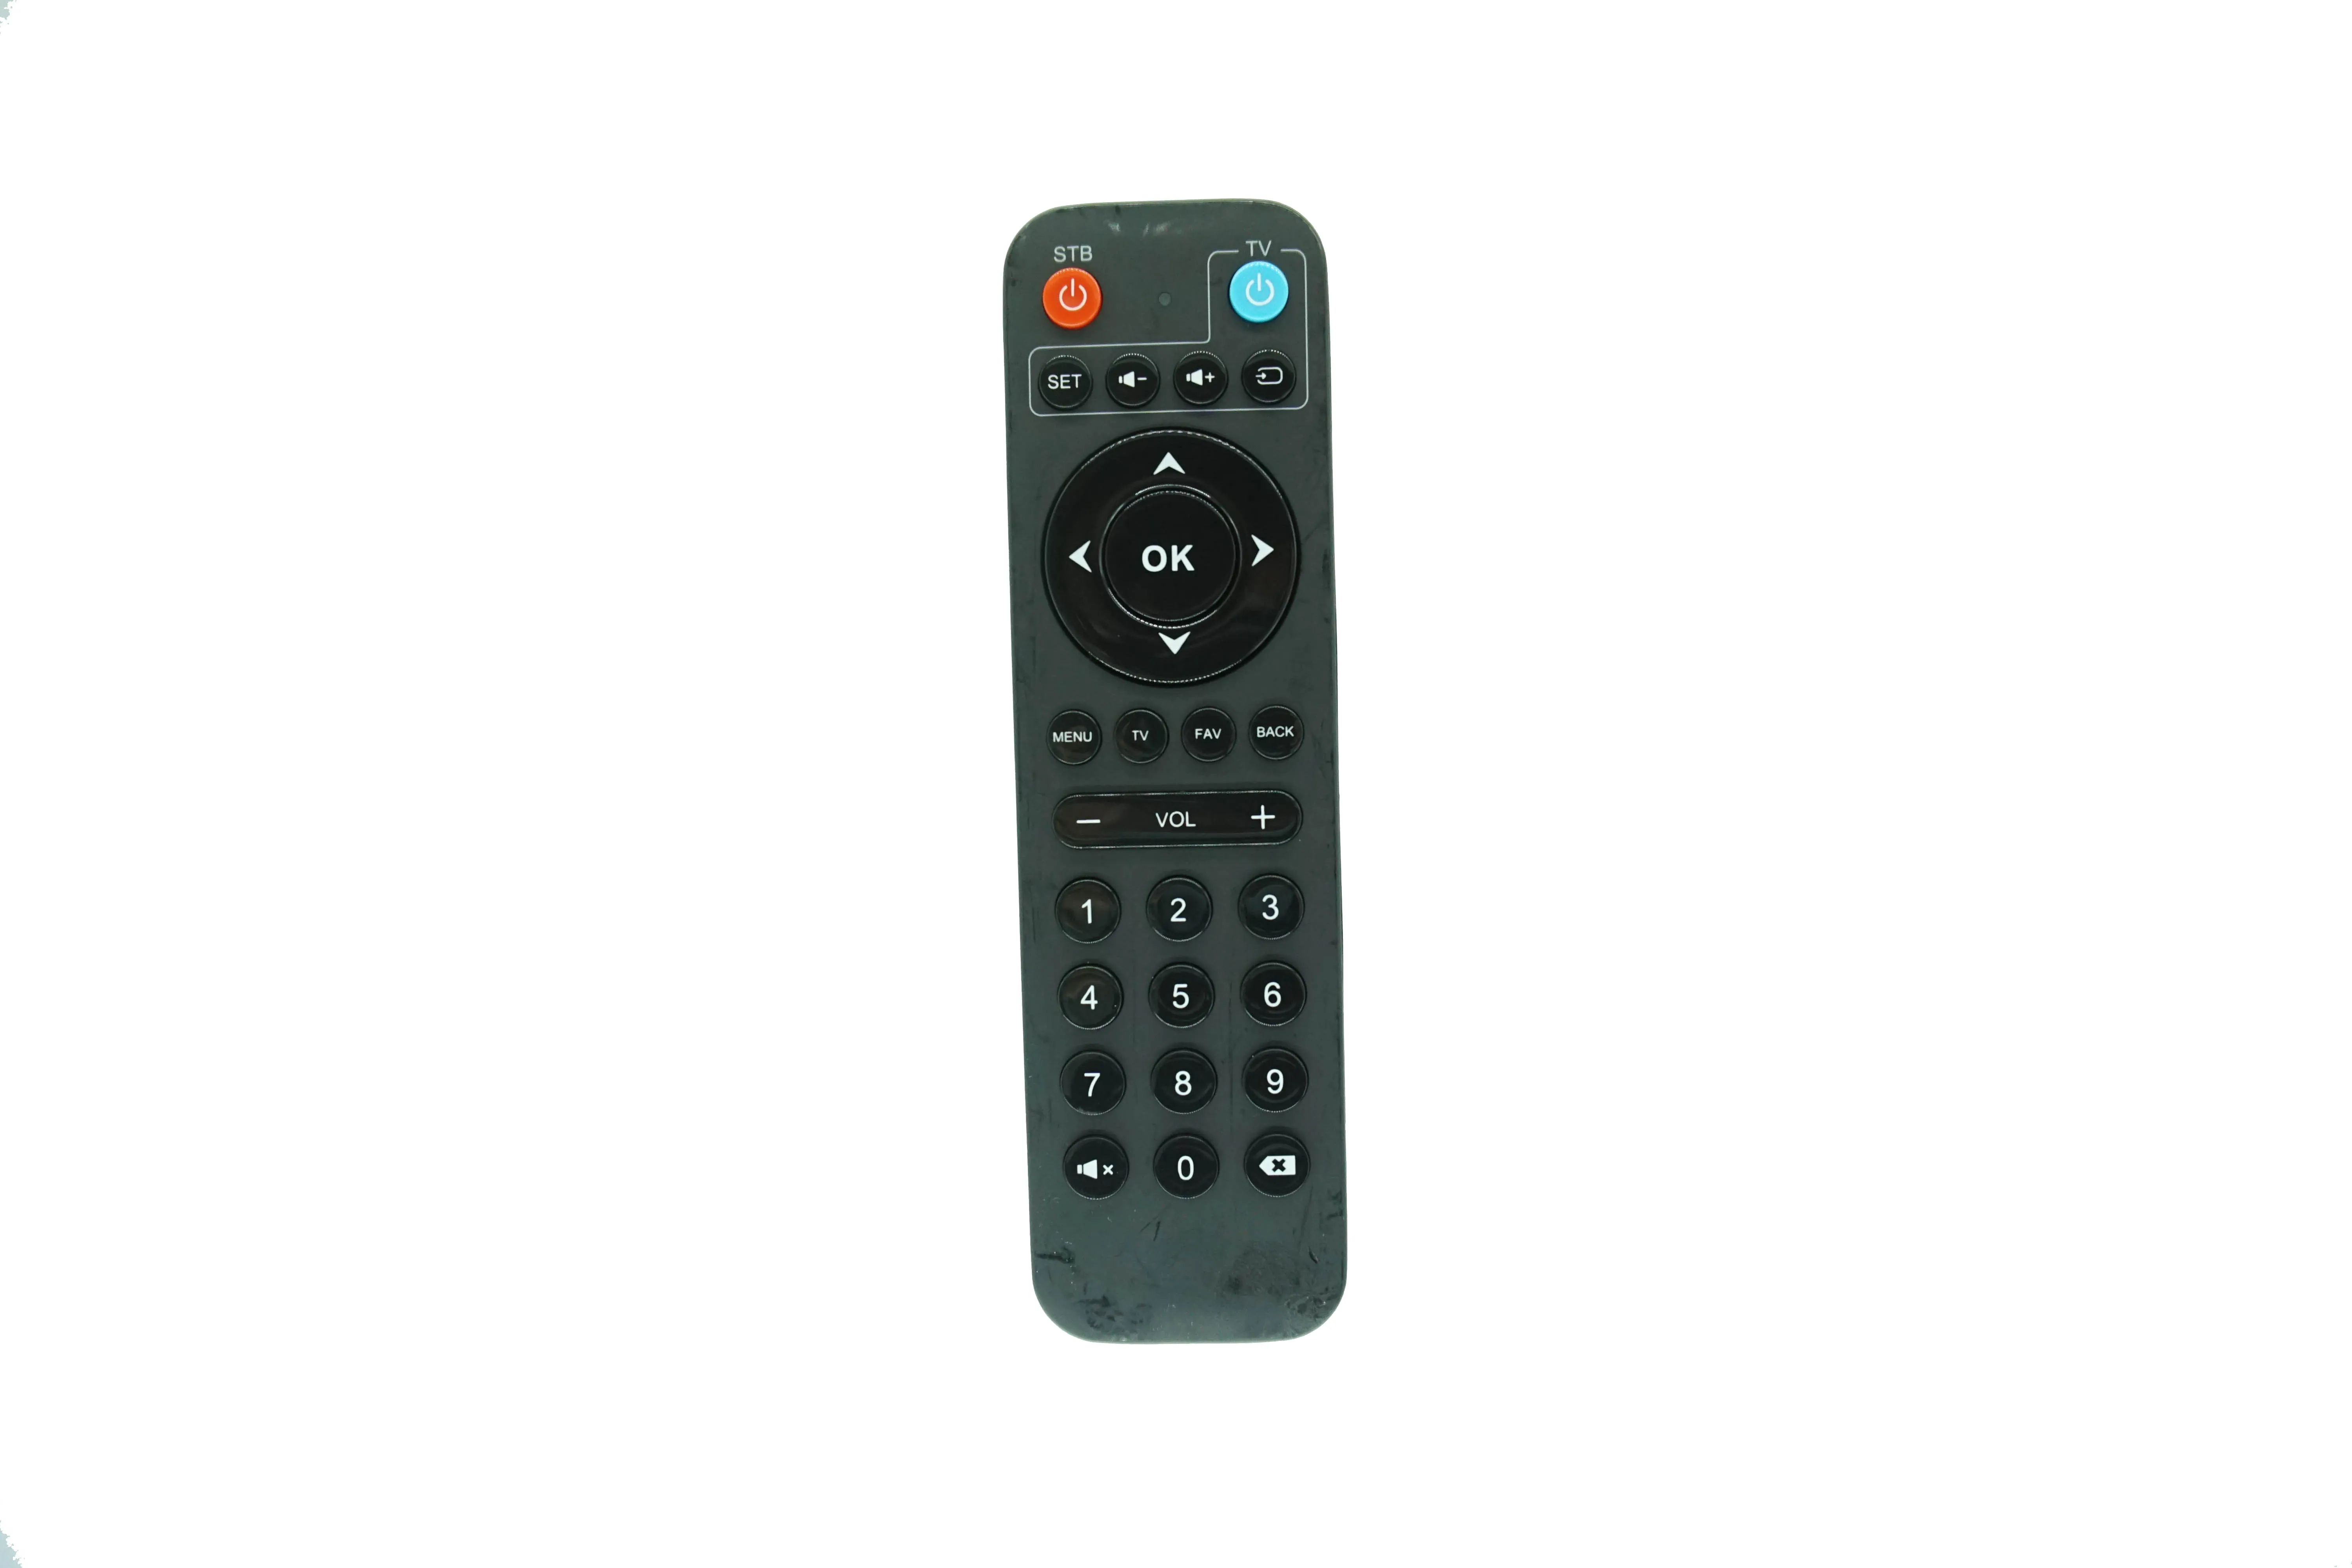 Remote Control For SDMC Technoserve DV8553 Android 4K OTT TV BOX Amlogic S905X S805X S905Y2